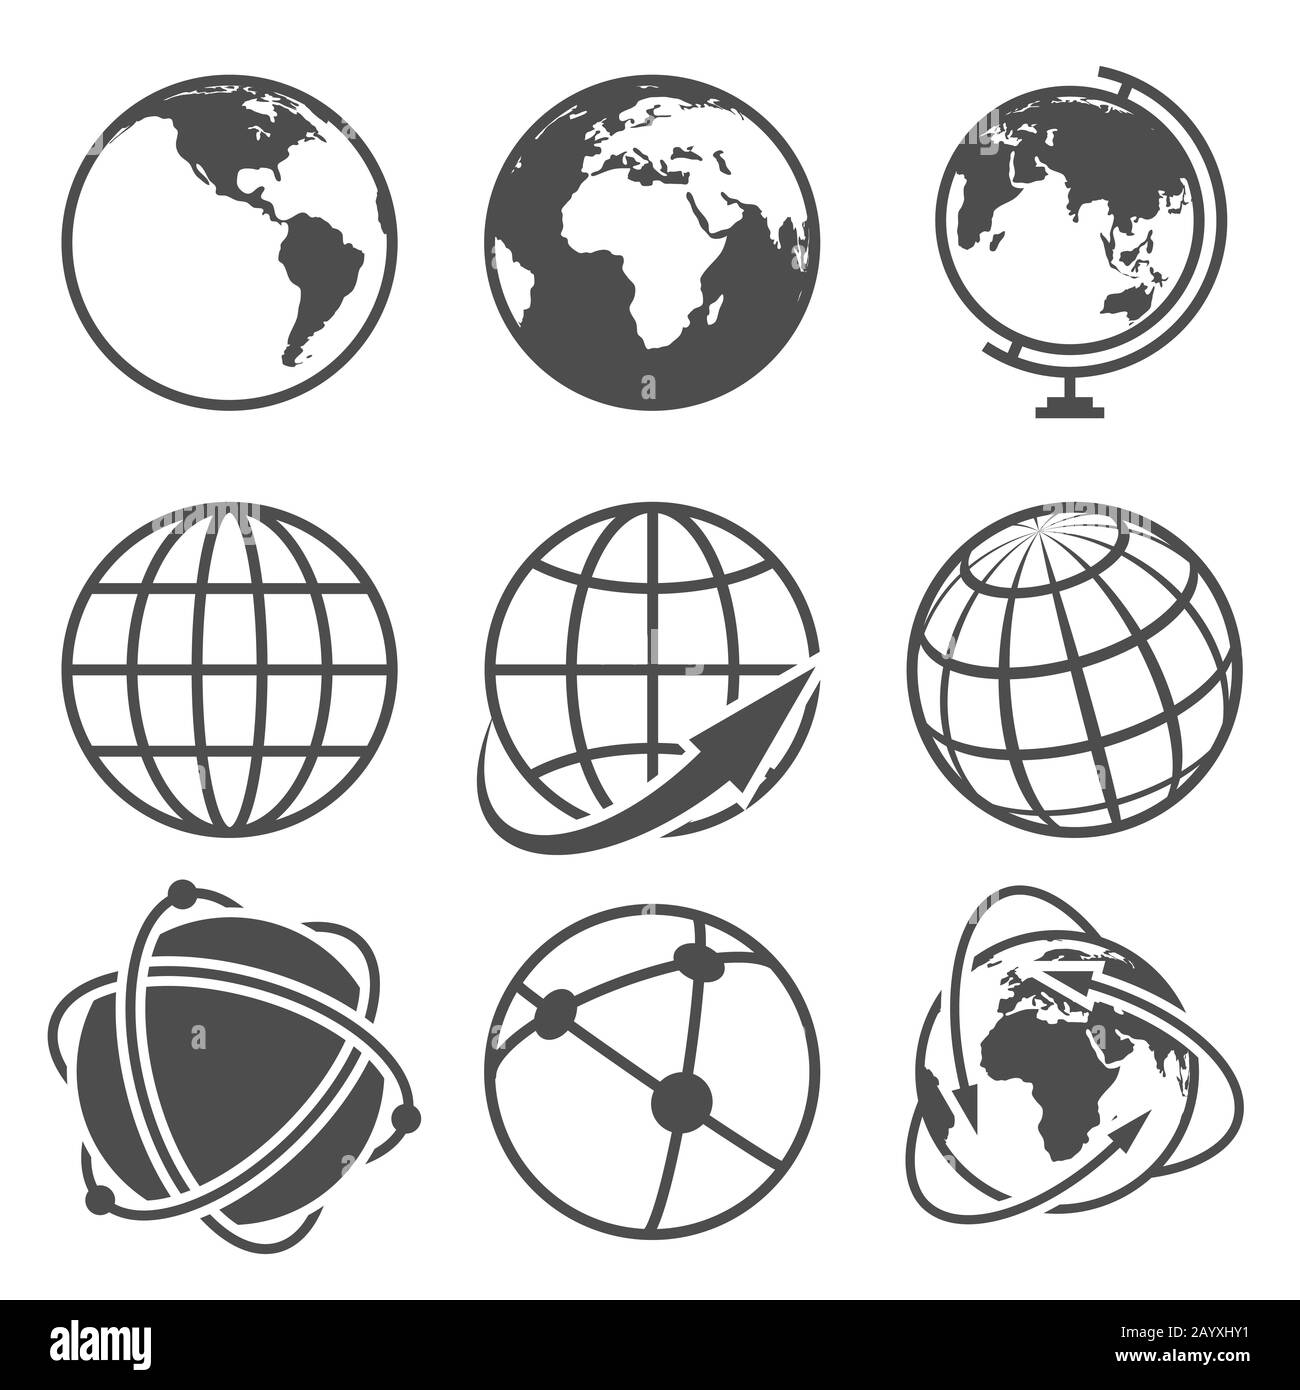 GLOBE-Erdvektor-Symbole festgelegt. Weltweit rund um den Globus und Internet auf der Weltkugel abgebildet Stock Vektor